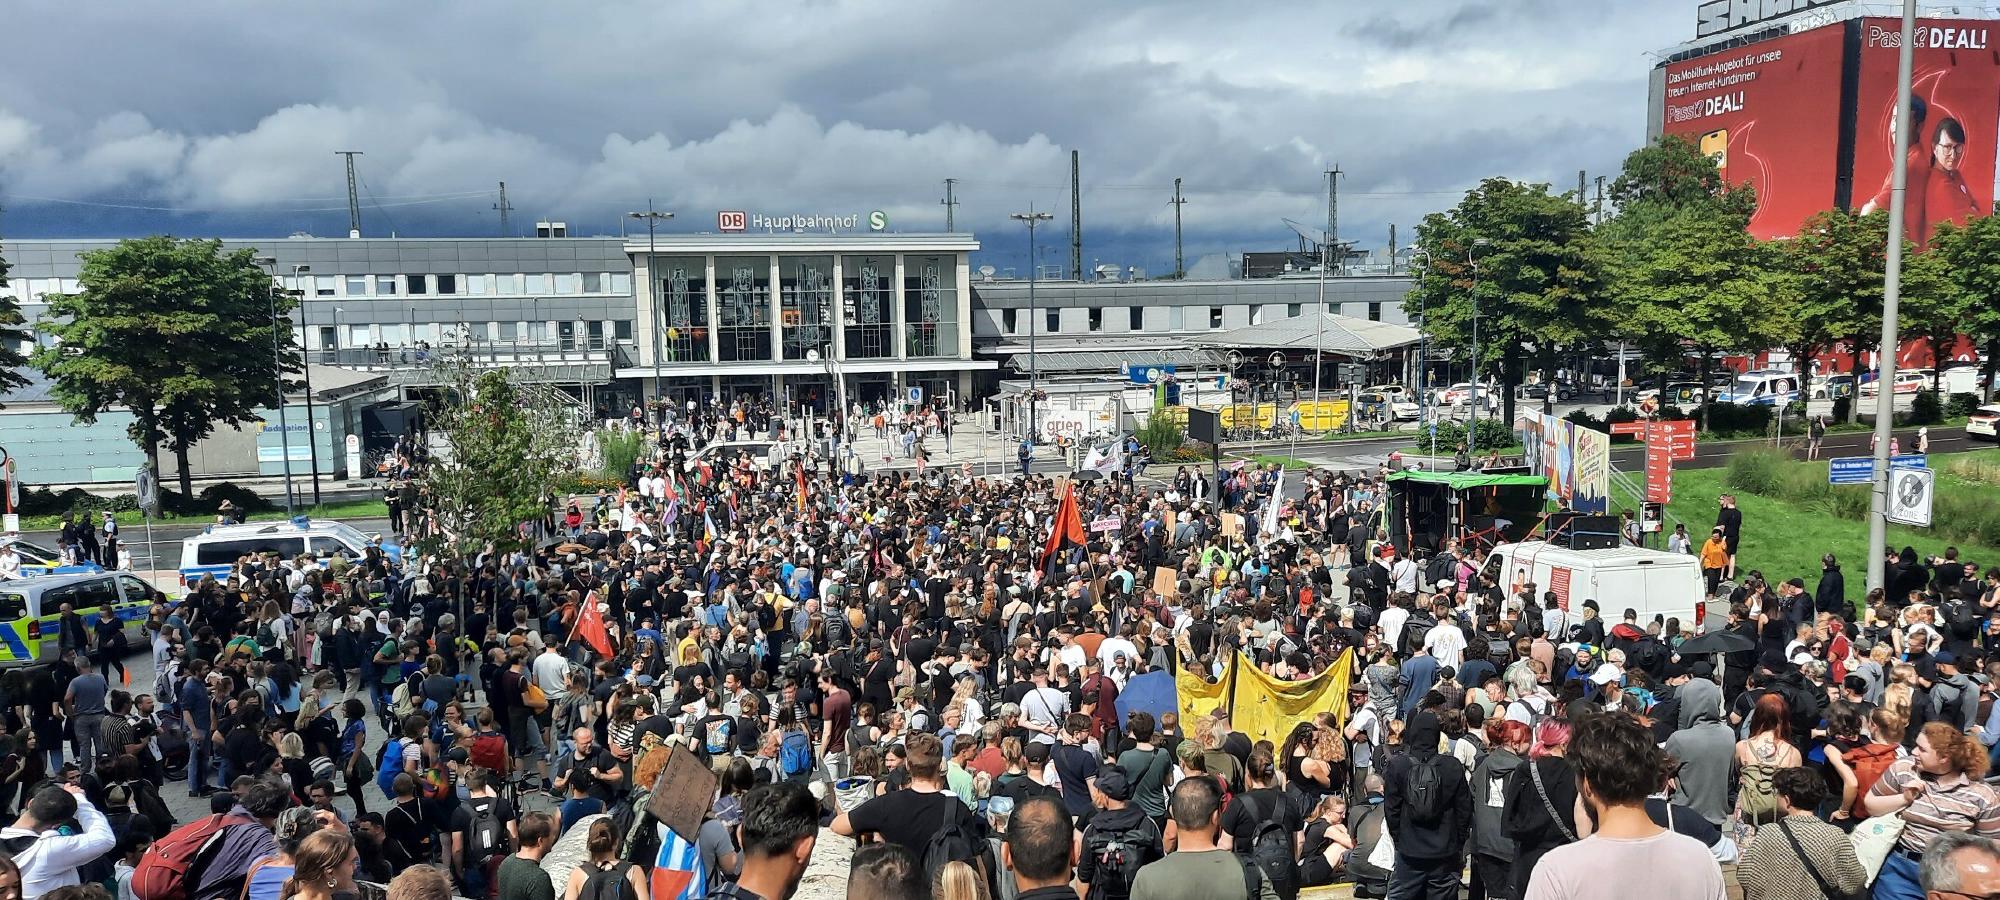 Bild der Demo mit einer großen Menschenmenge vor dem Hauptbahnhof Dortmund.